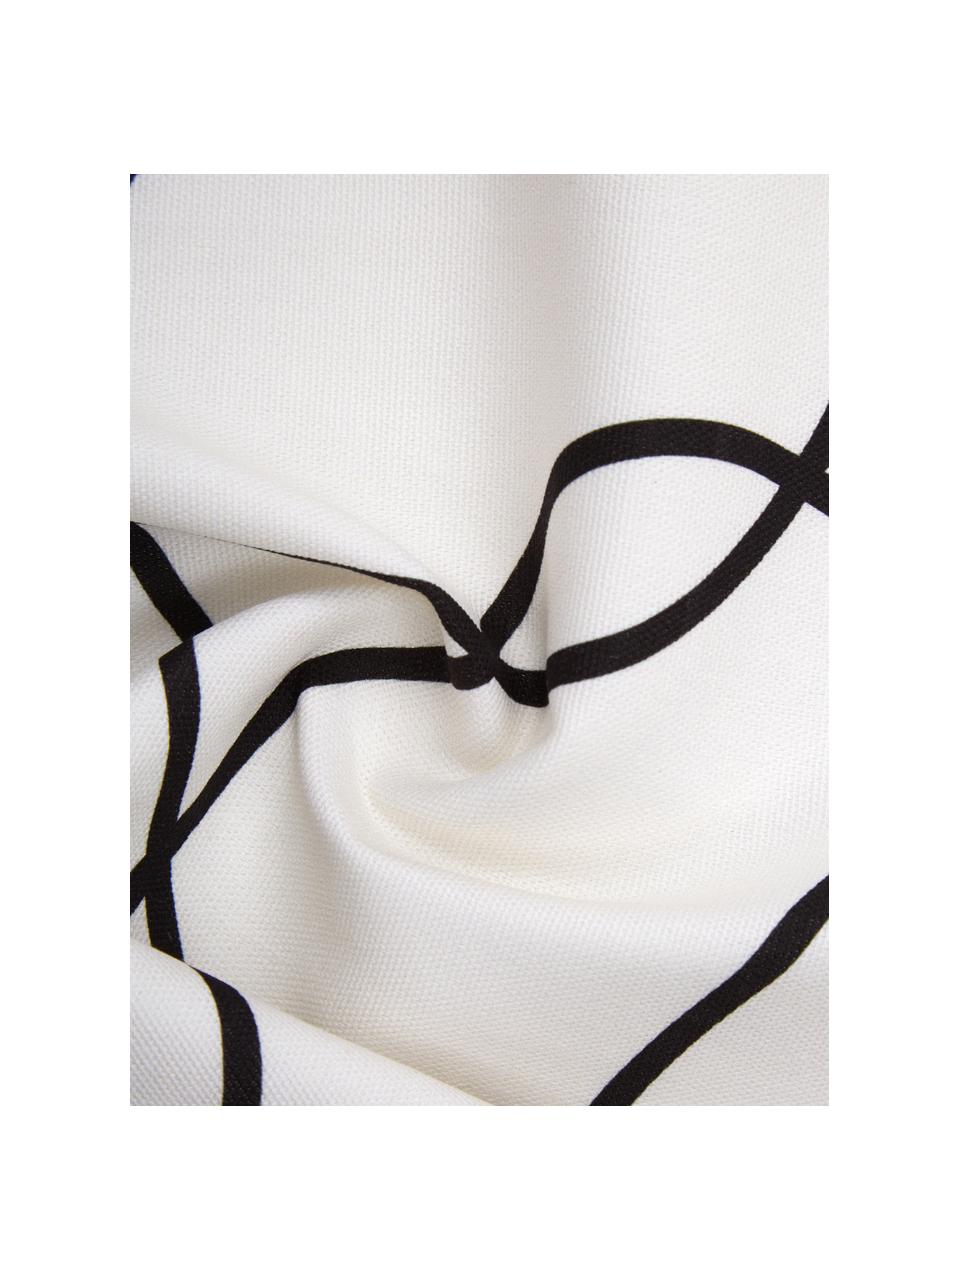 Poszewka na poduszkę z bawełny organicznej Laleh, 100% bawełna organiczna z certyfikatem GOTS, Biały, czarny, S 45 x D 45 cm